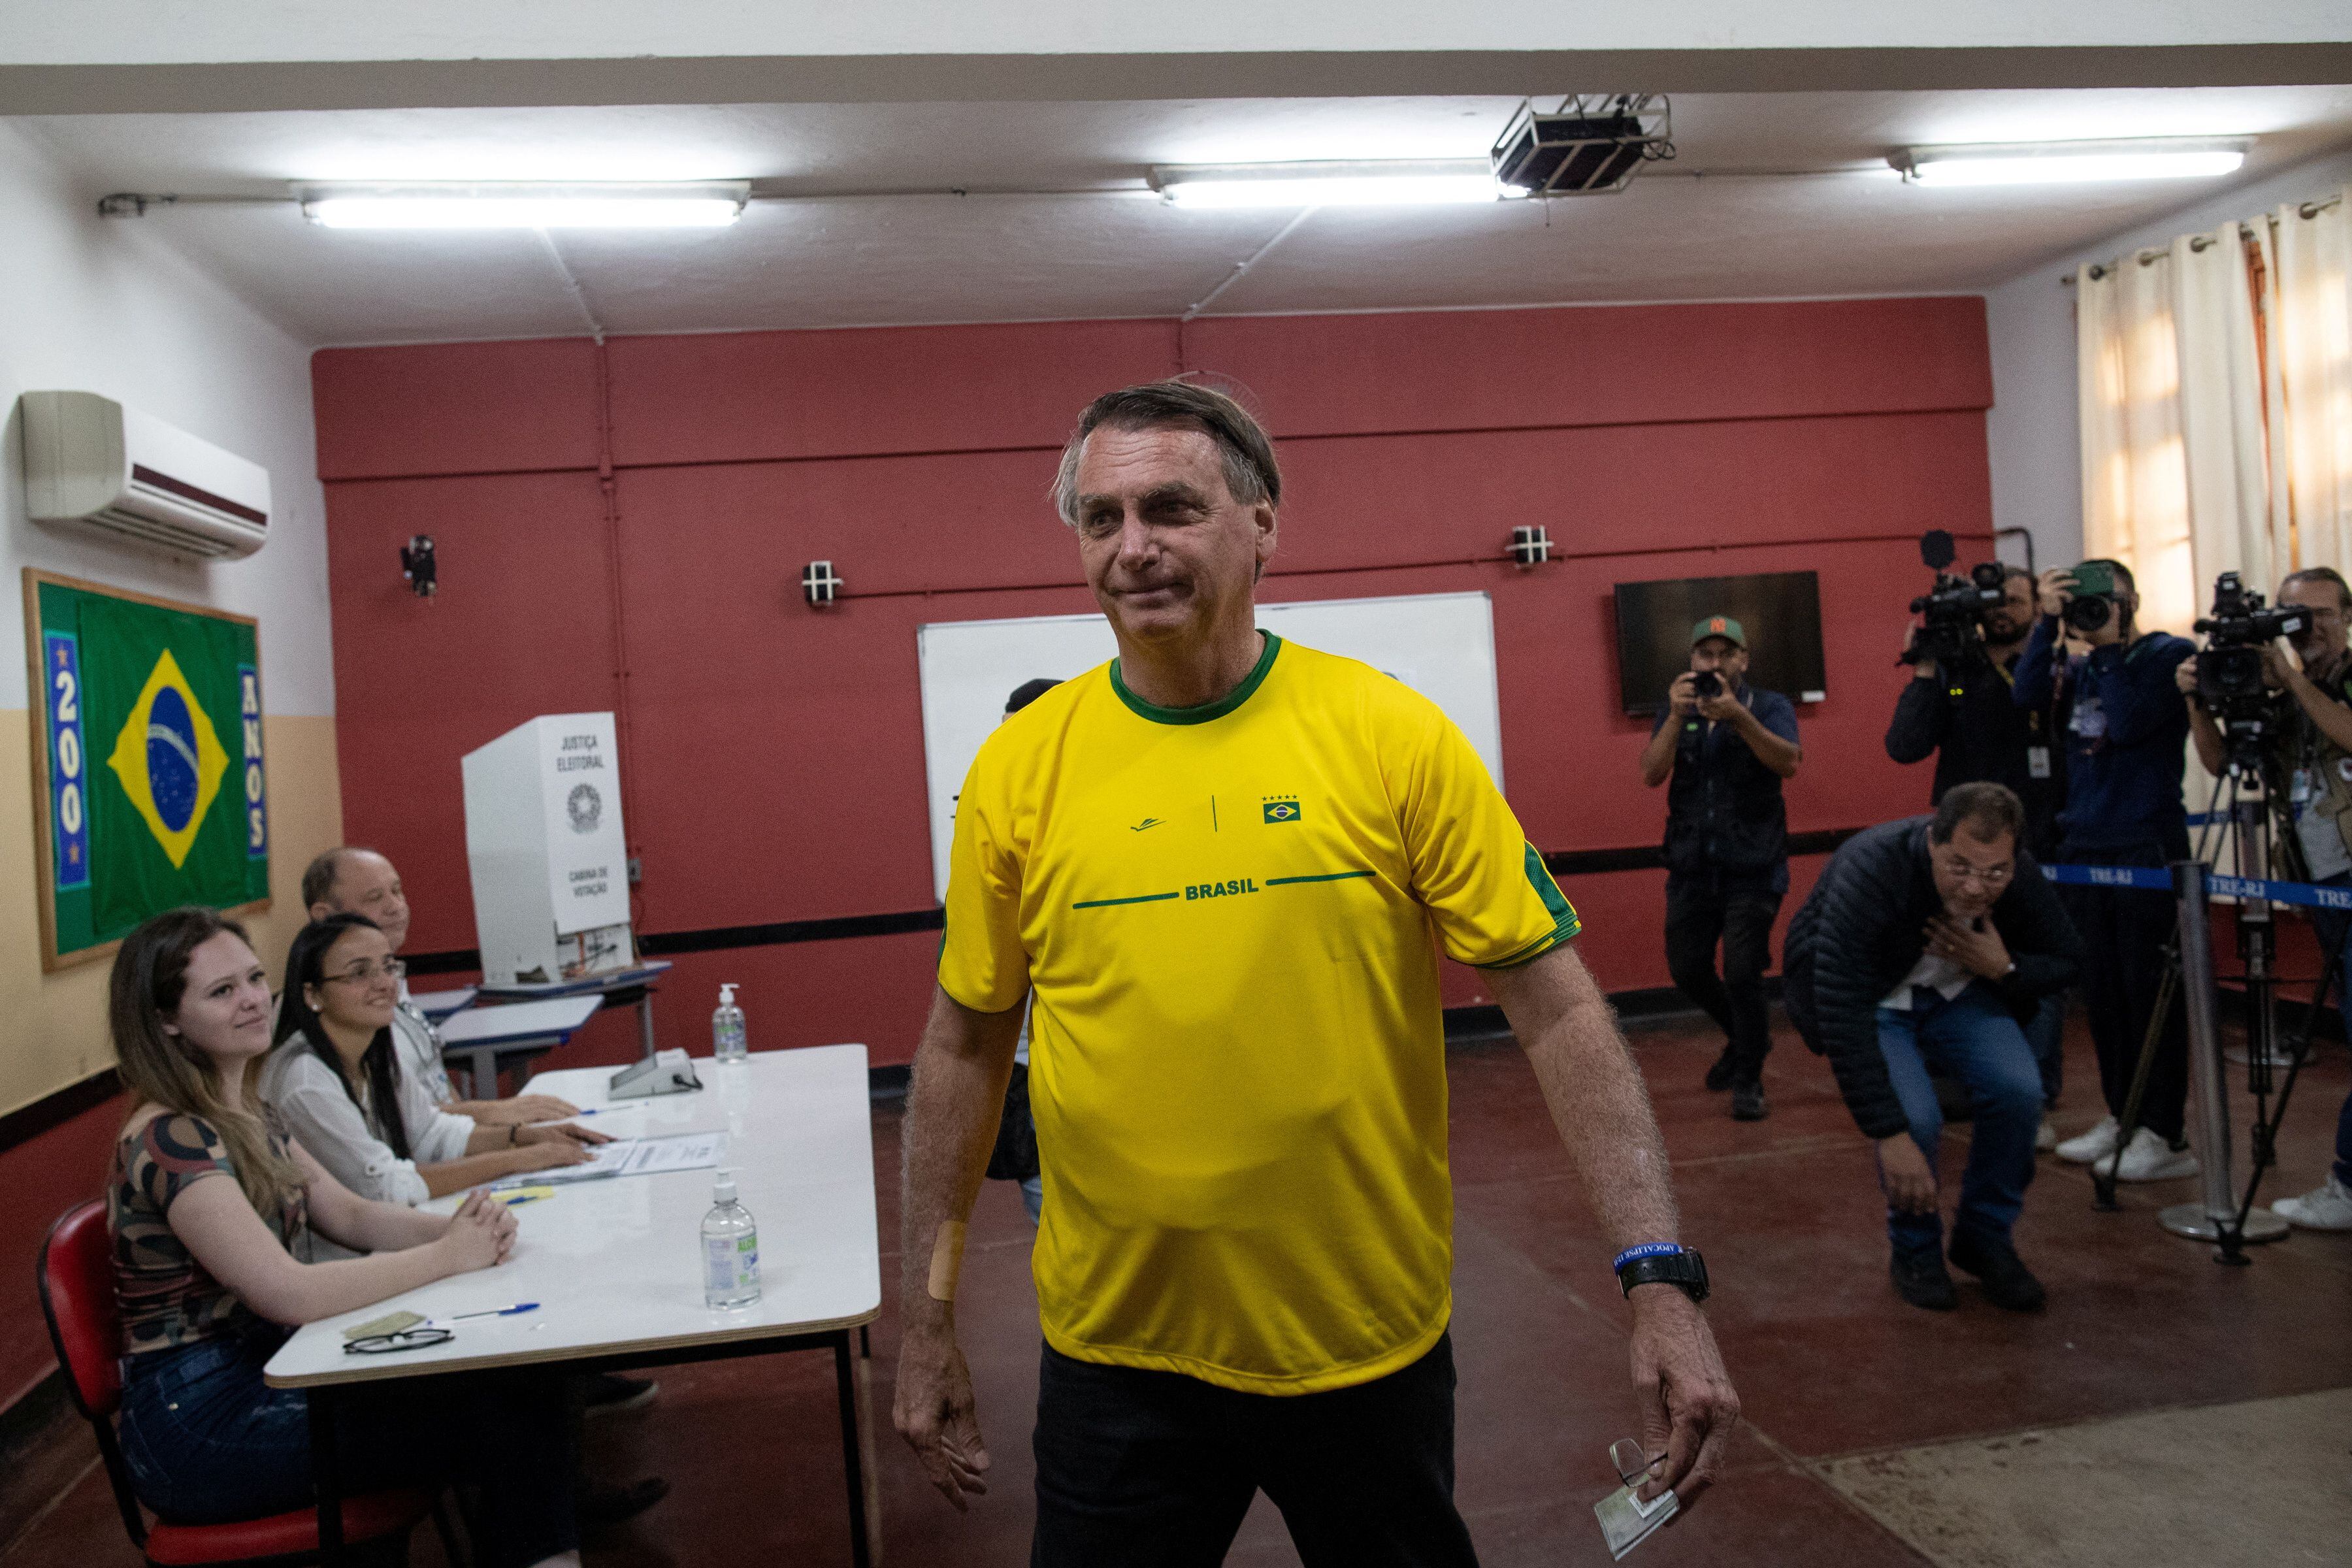 Para Sérgio Etchegoyen, Jair Bolsonaro "salió fortalecido" de las elecciones de este domingo en Brasil (Andre Coelho/Pool via REUTERS)